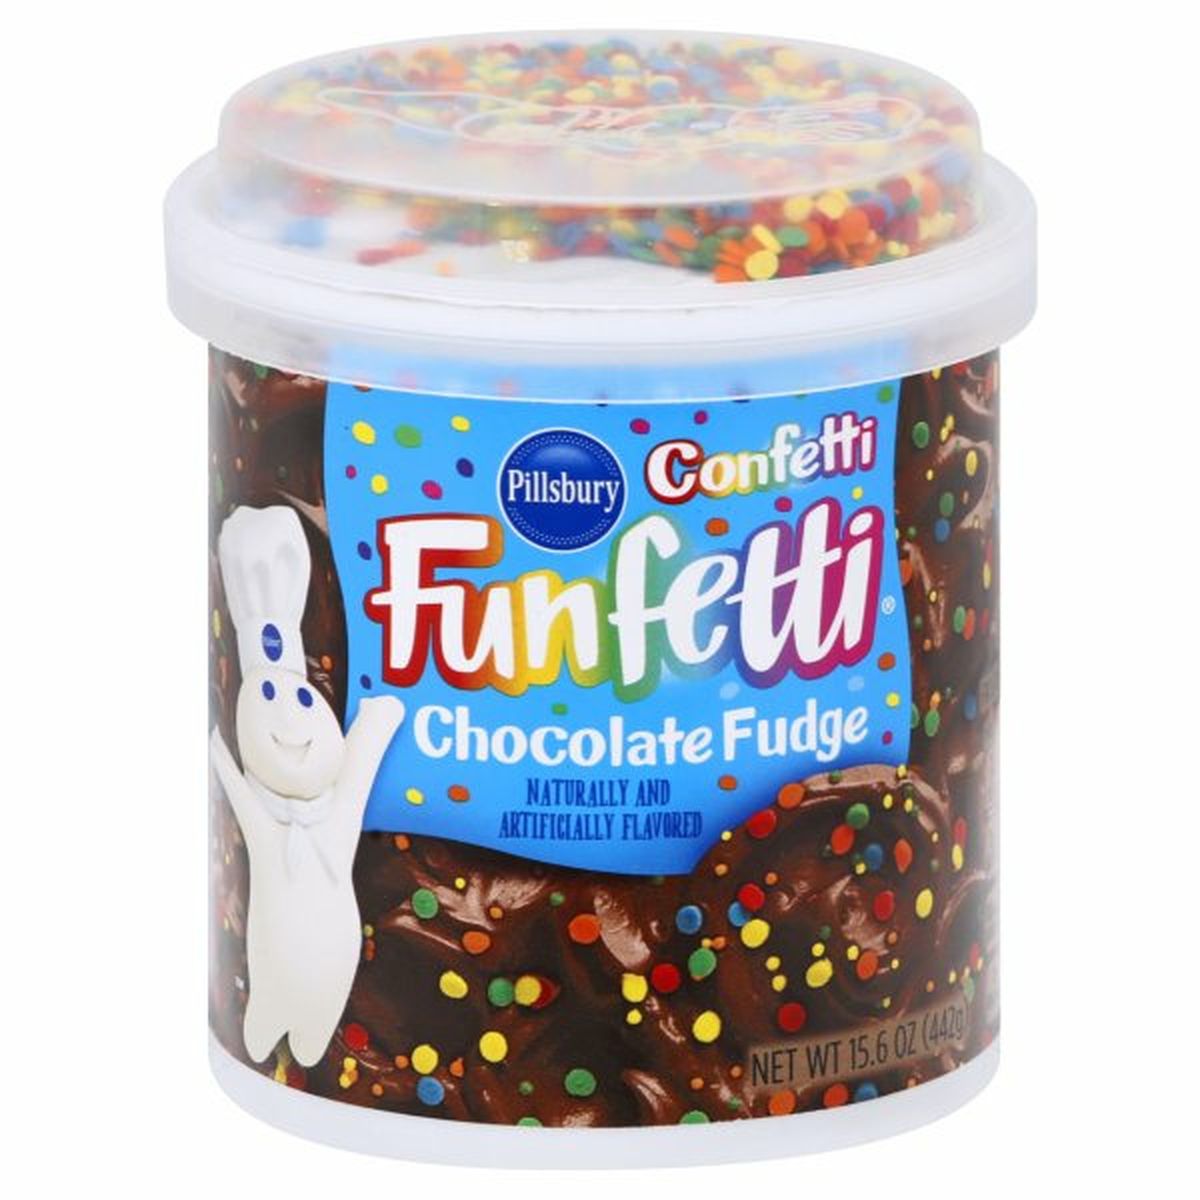 Calories in Pillsbury Confetti Funfetti Frosting, Chocolate Fudge